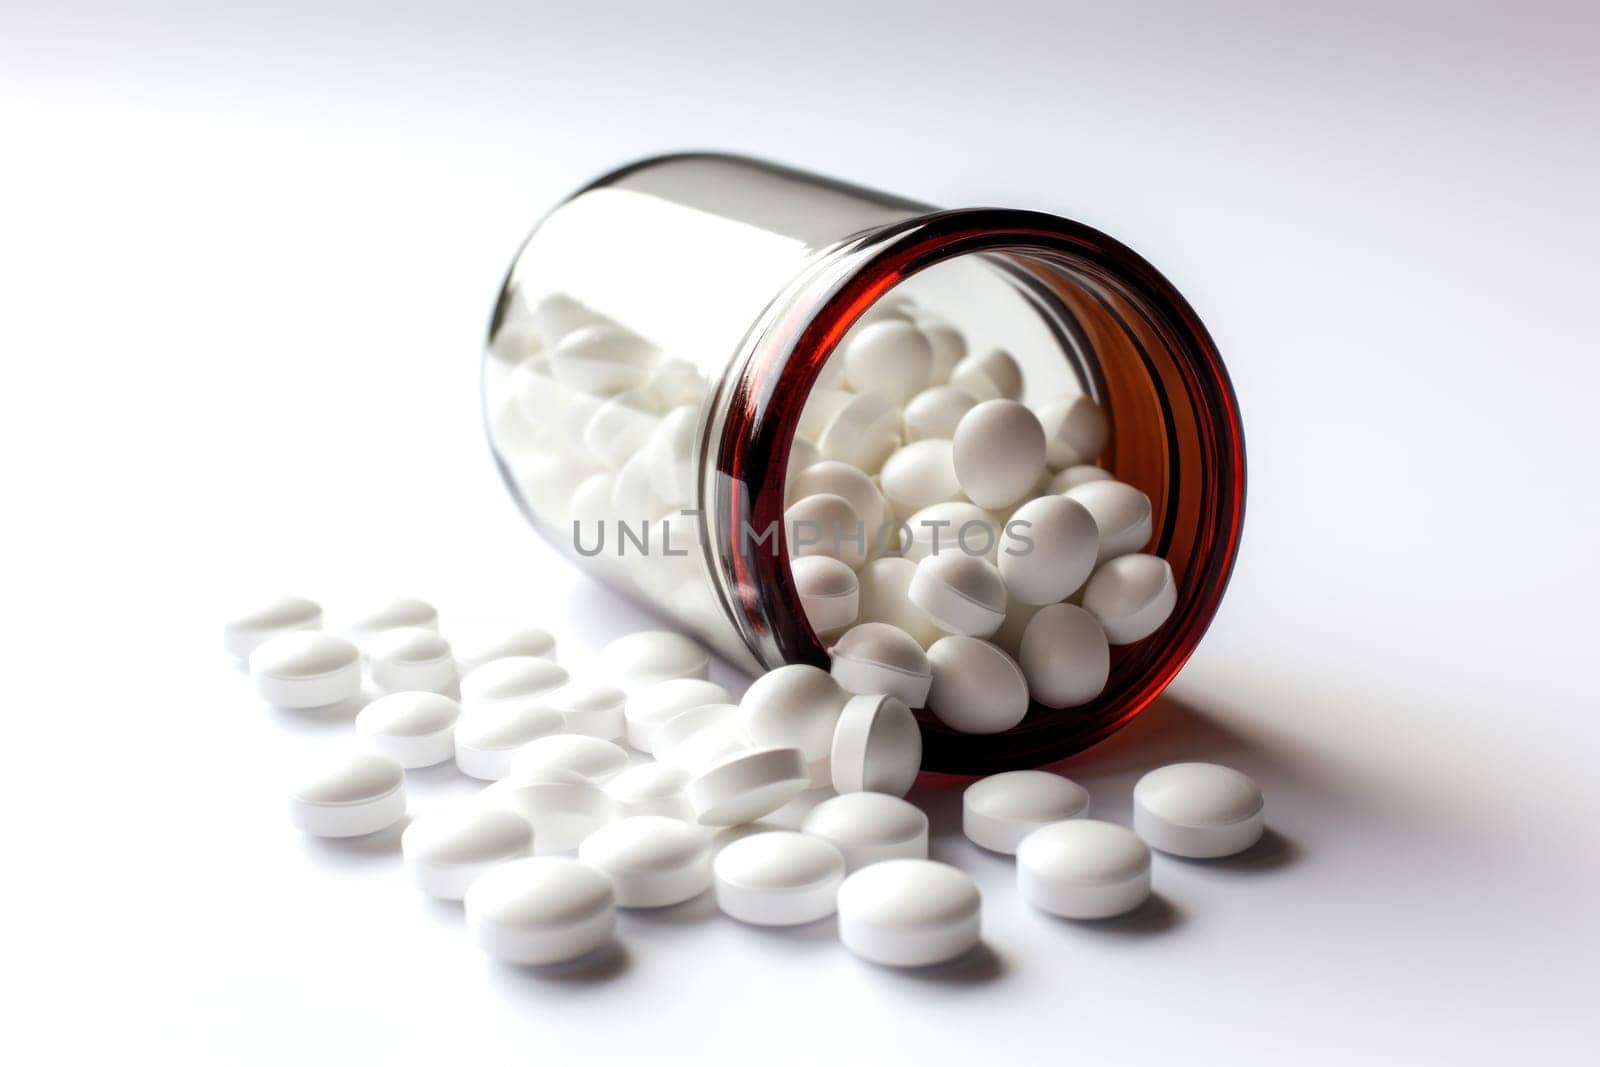 Spilled Medication Pills from Glass Bottle by ugguggu